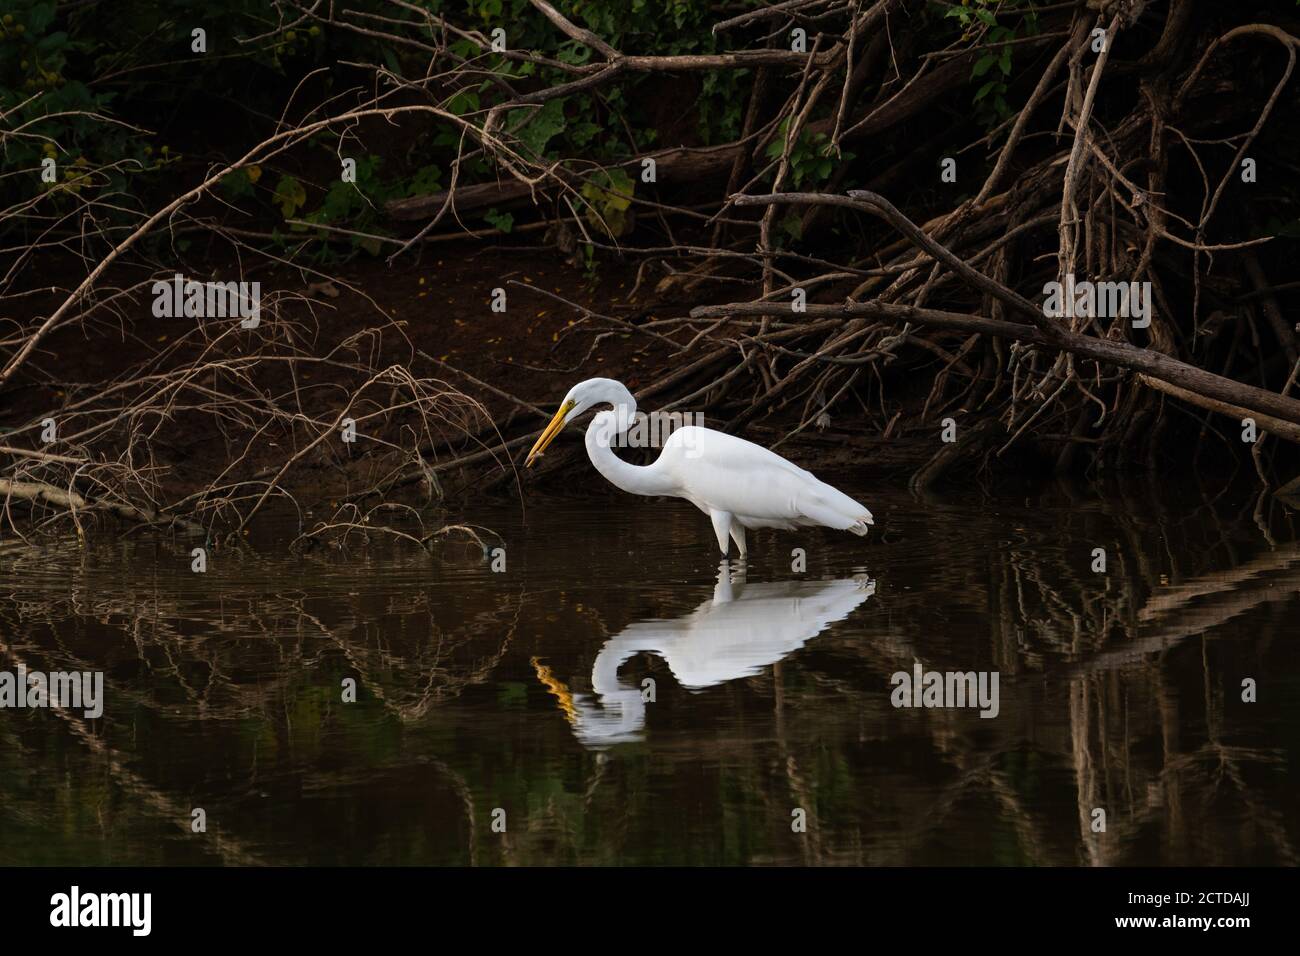 Un grande Egret bianco che pervade in acqua vicino ad una riva del lago coperta di rami e alberi con un piccolo pesce nel suo becco. Foto Stock